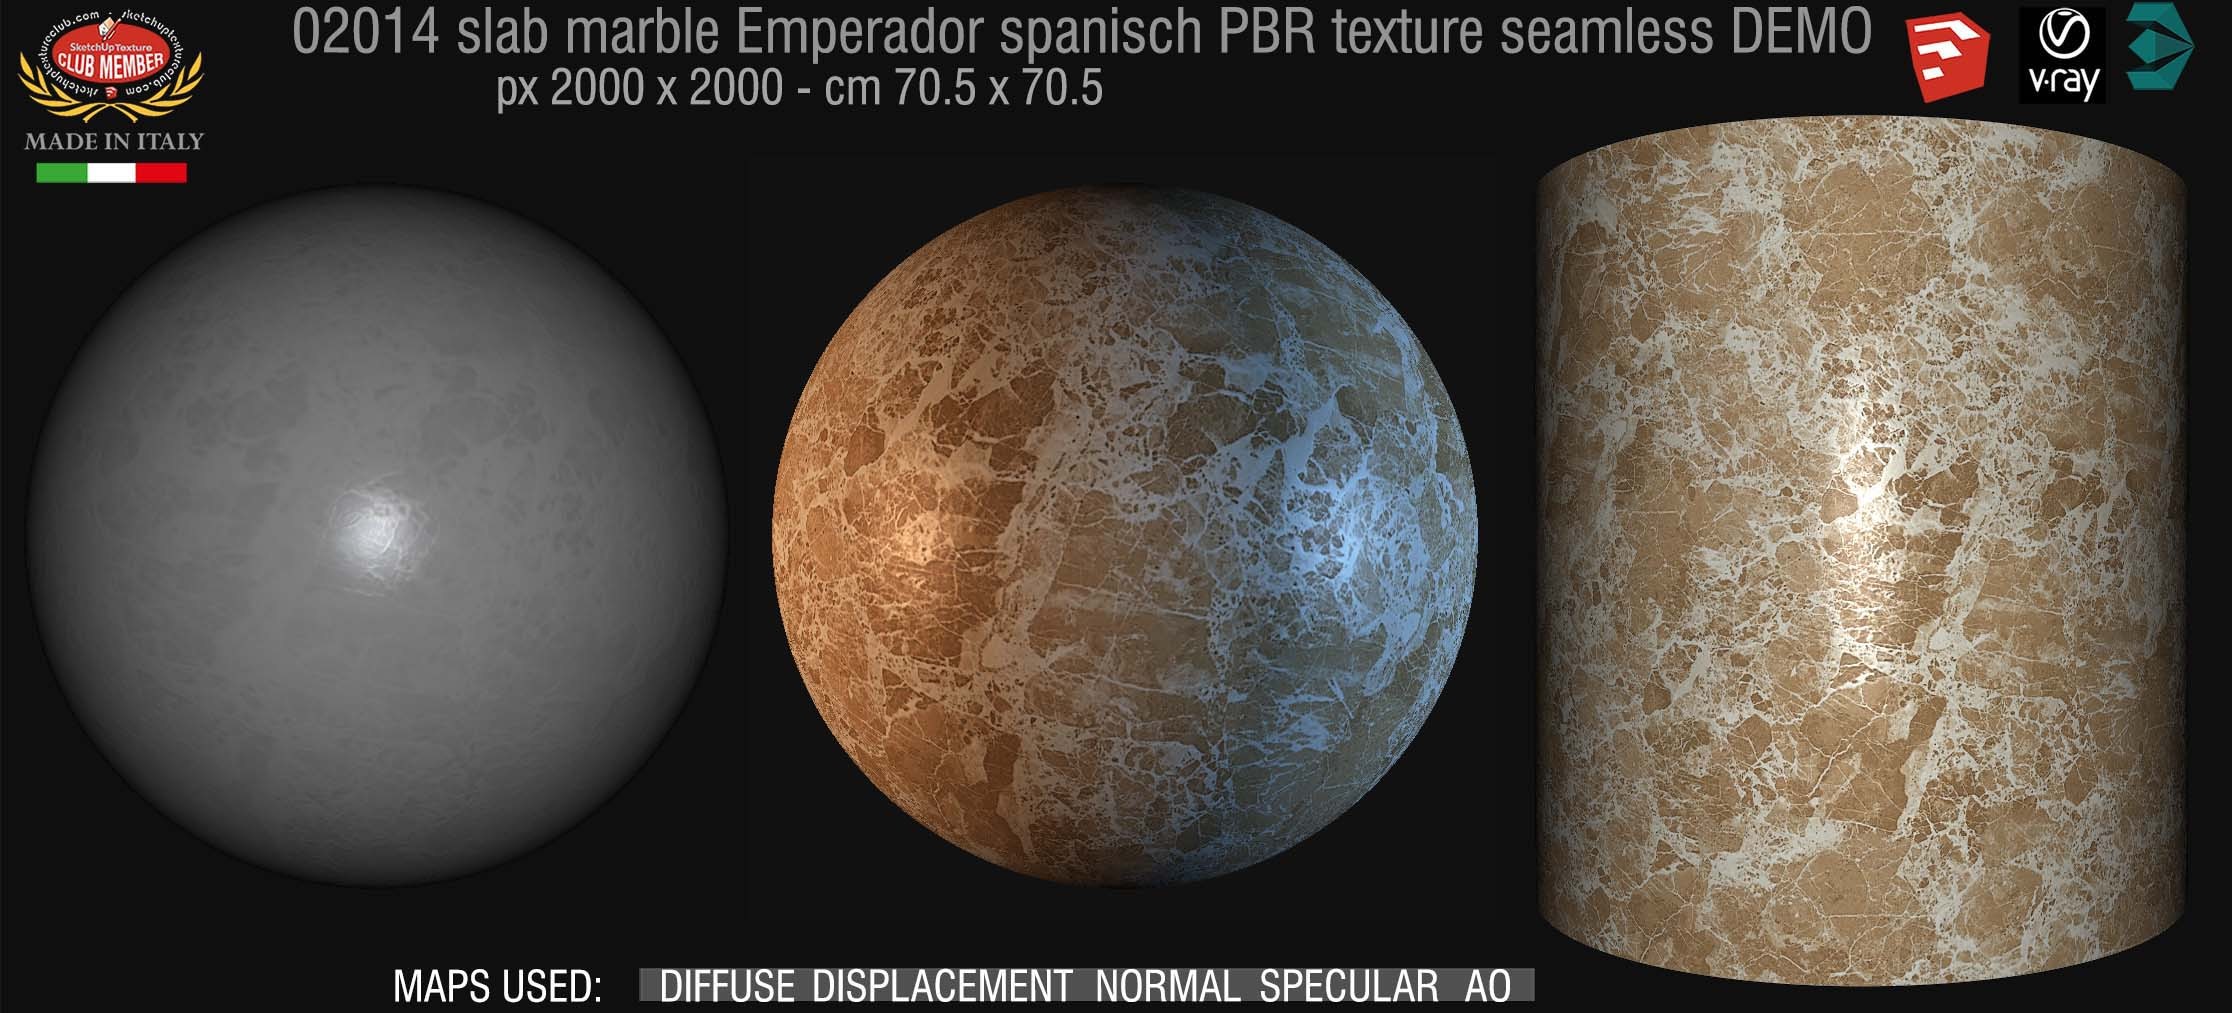 02014 slab marble emperador spanisch PBR texture seamless DEMO